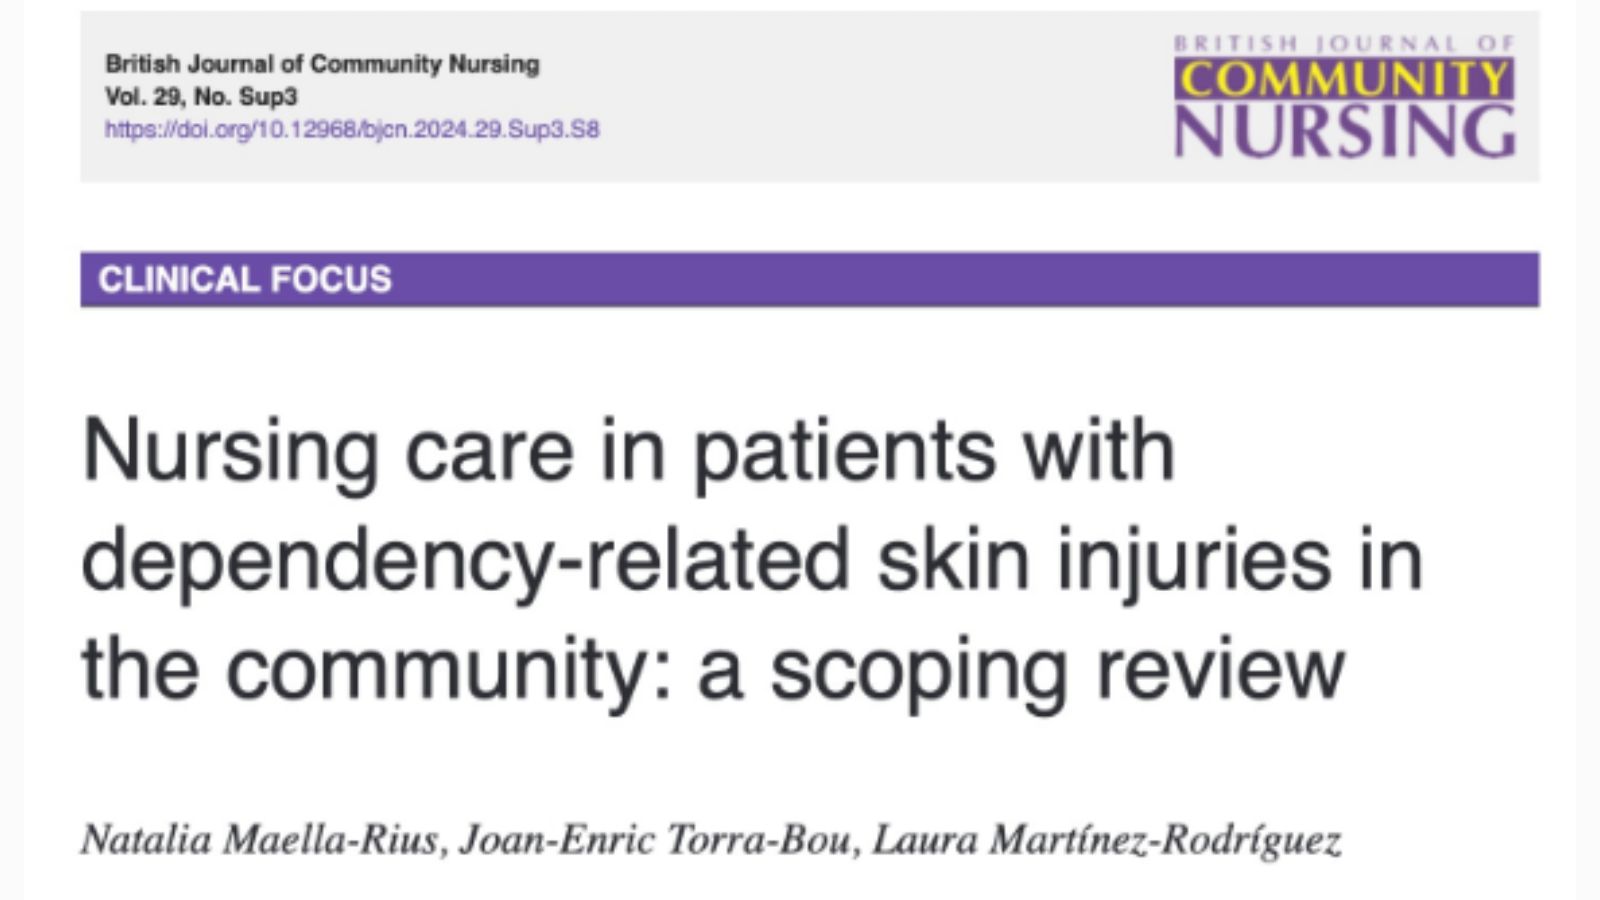 Scoping review sobre el cuidado de pacientes con lesiones cutáneas relacionadas con la dependencia en la comunidad.